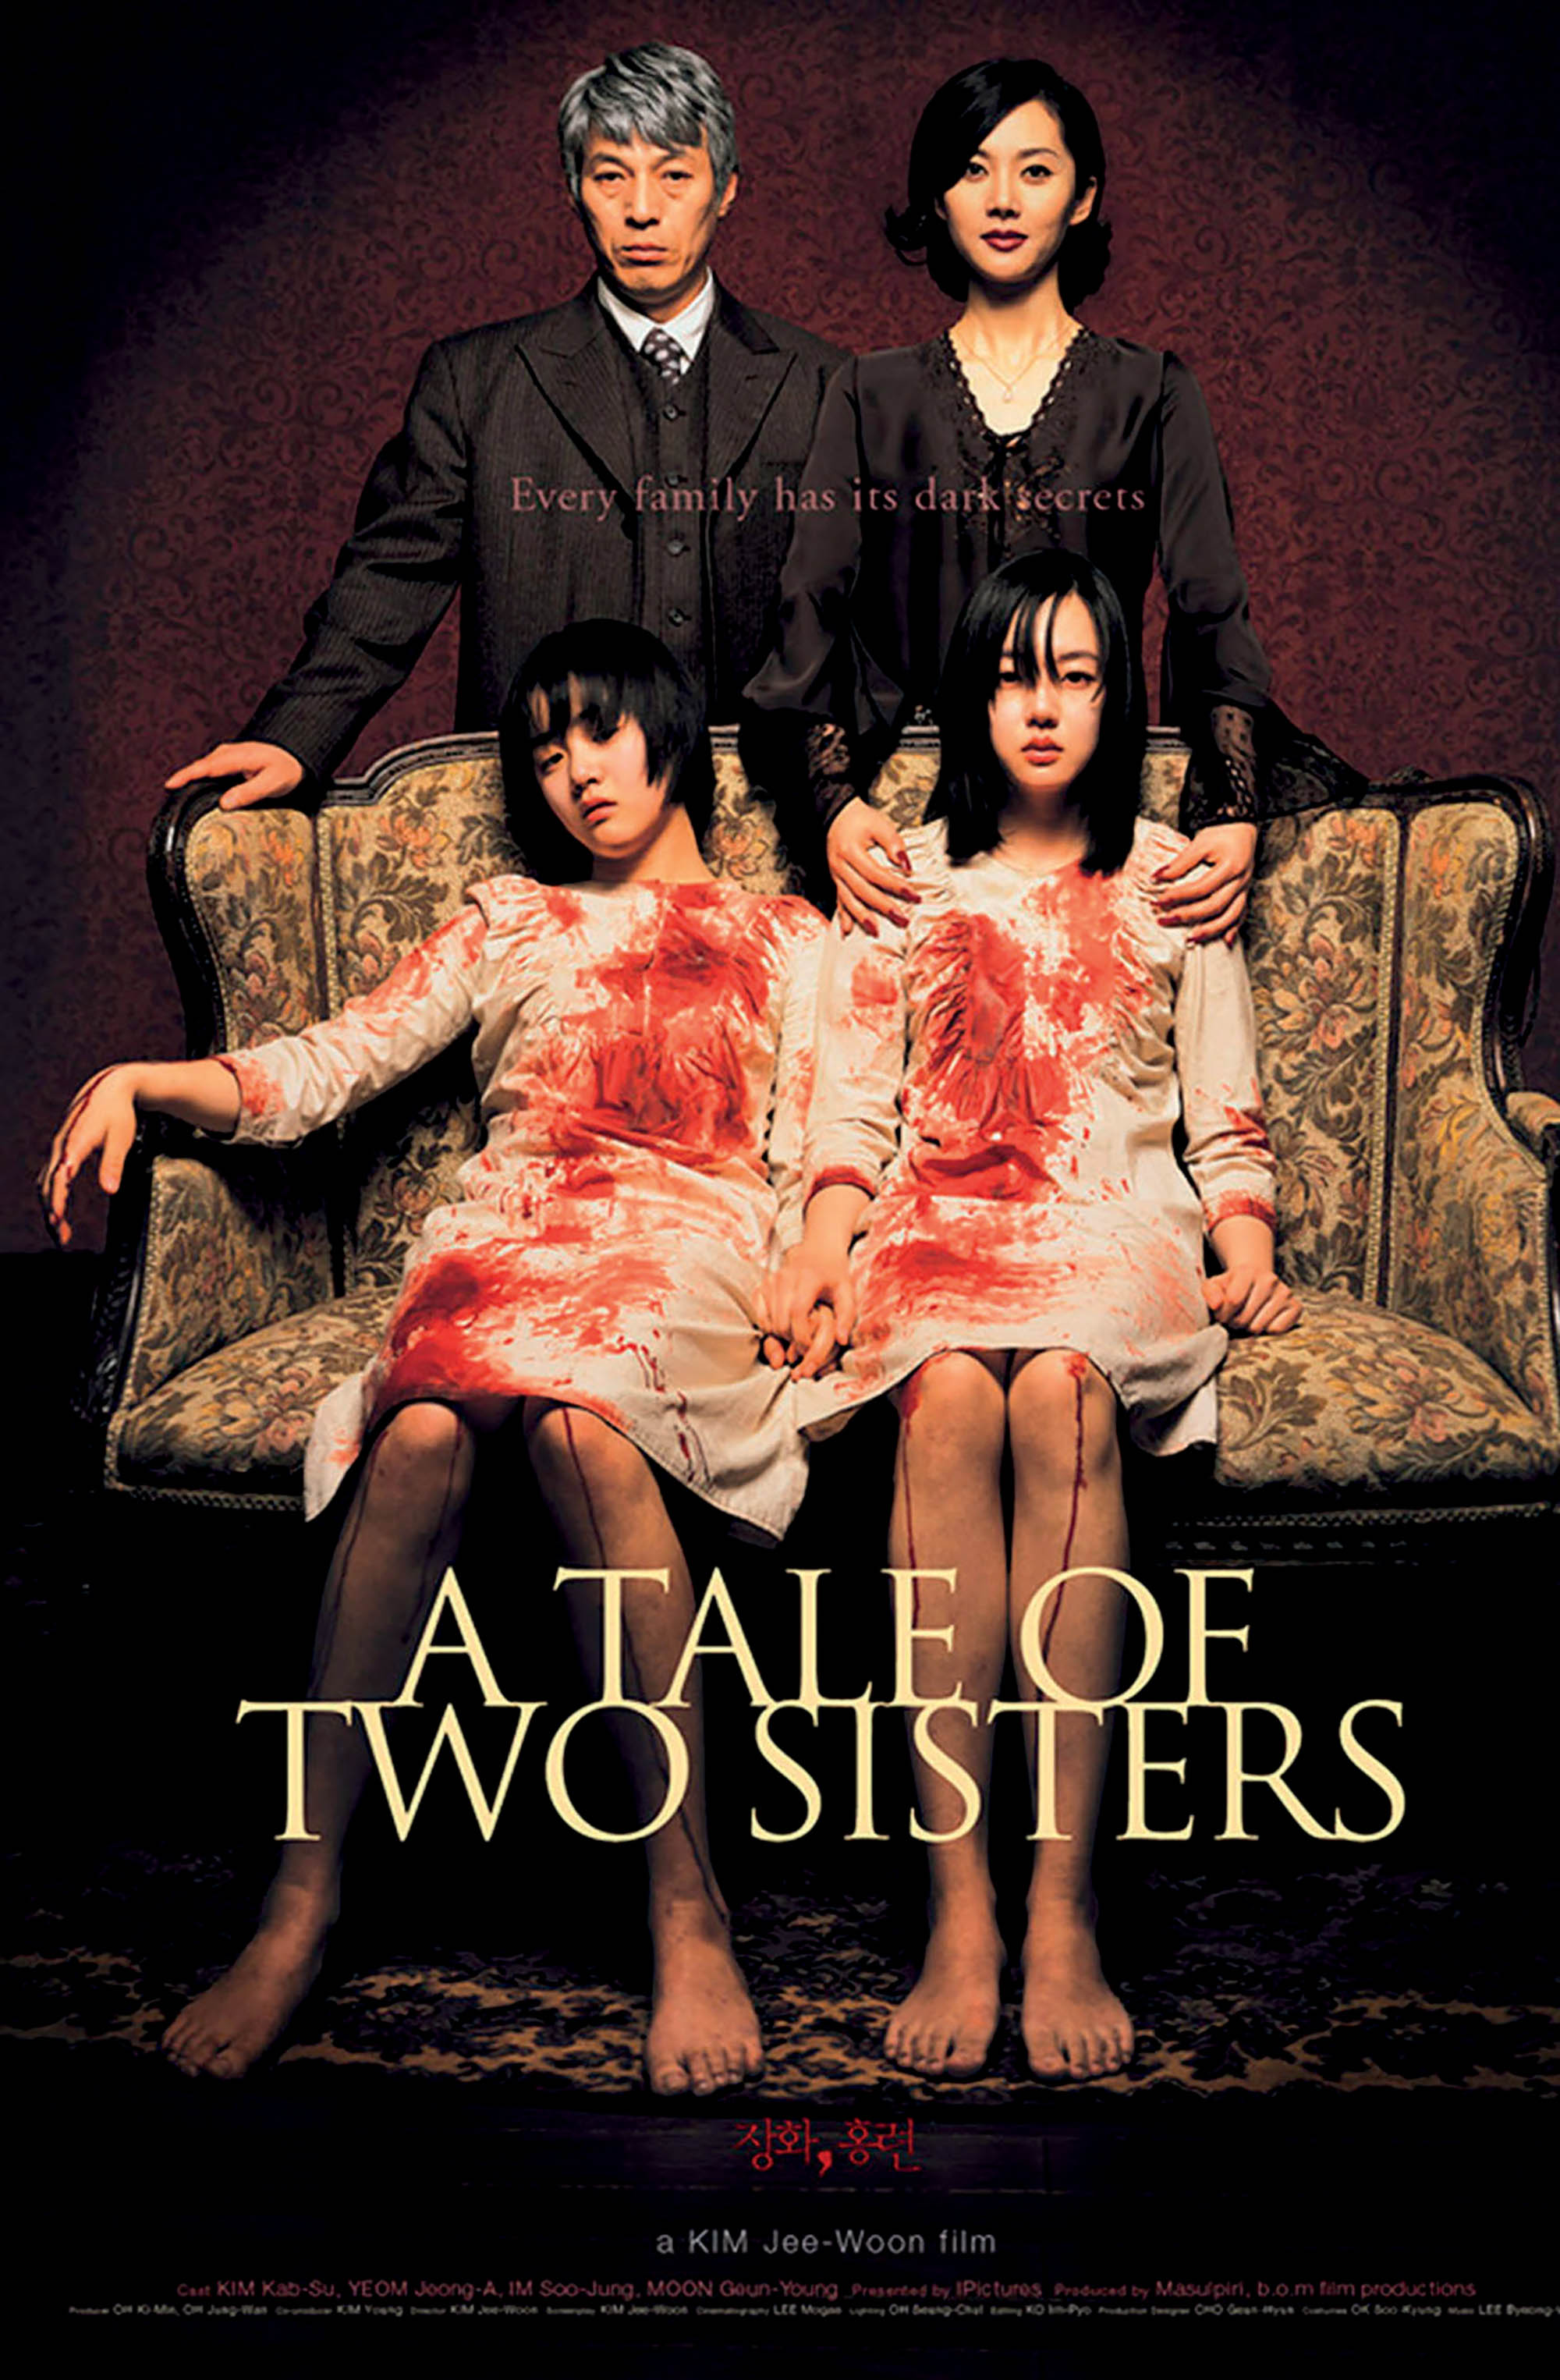 A tale of two sisters tác phẩm Hàn Quốc